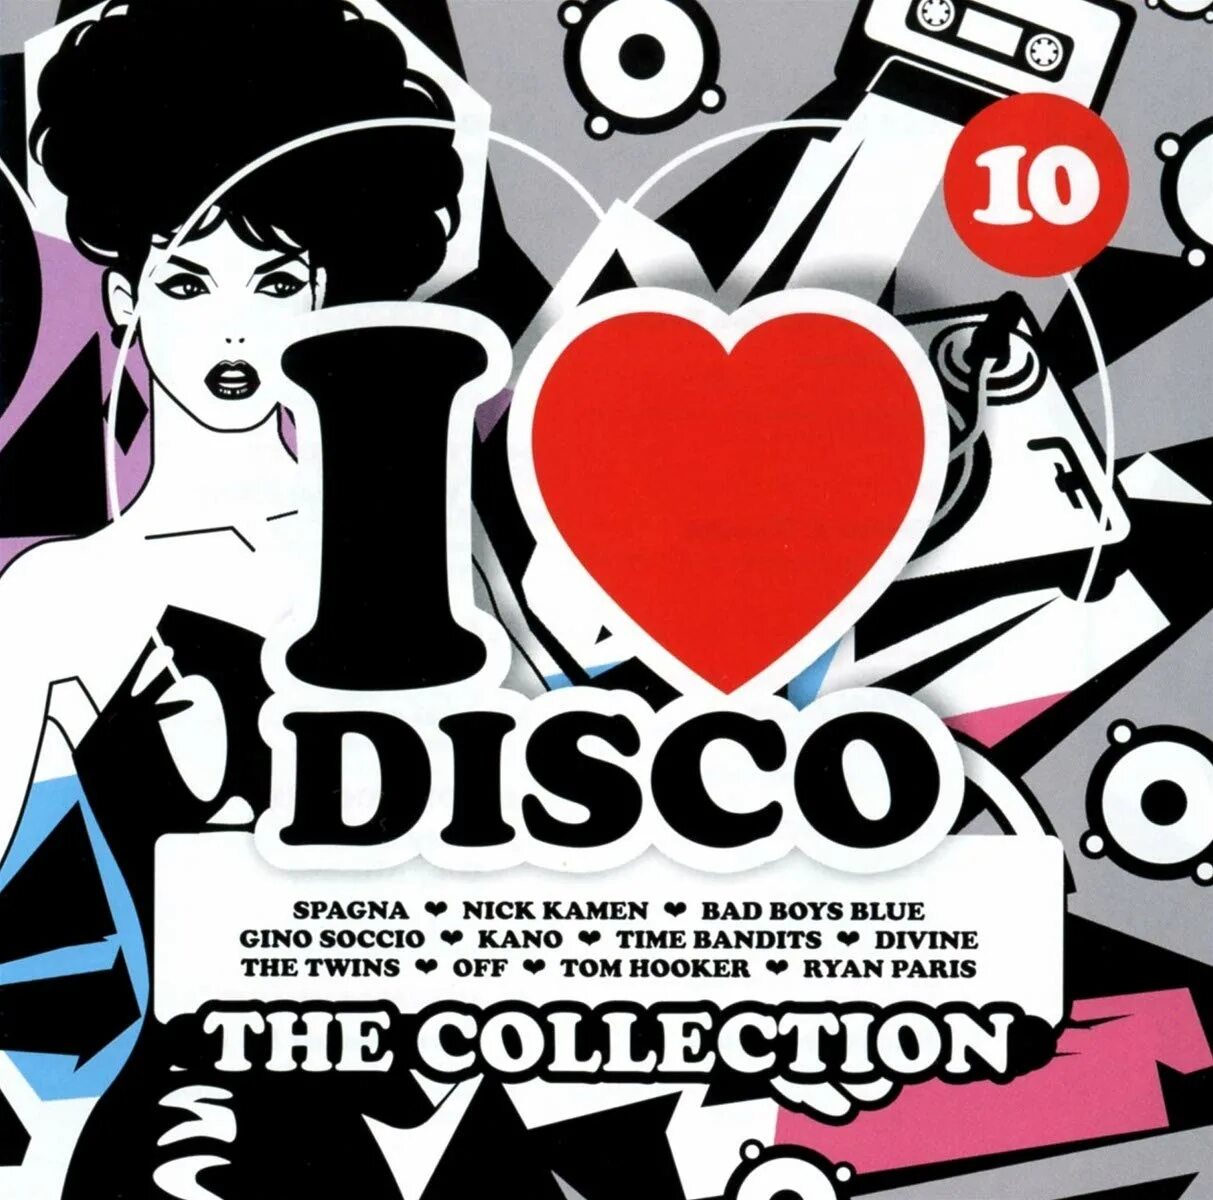 I Love Disco. Евро диско коллекция Vol 1. I Love Disco Diamonds collection обложка. Картинки итало диско Love.